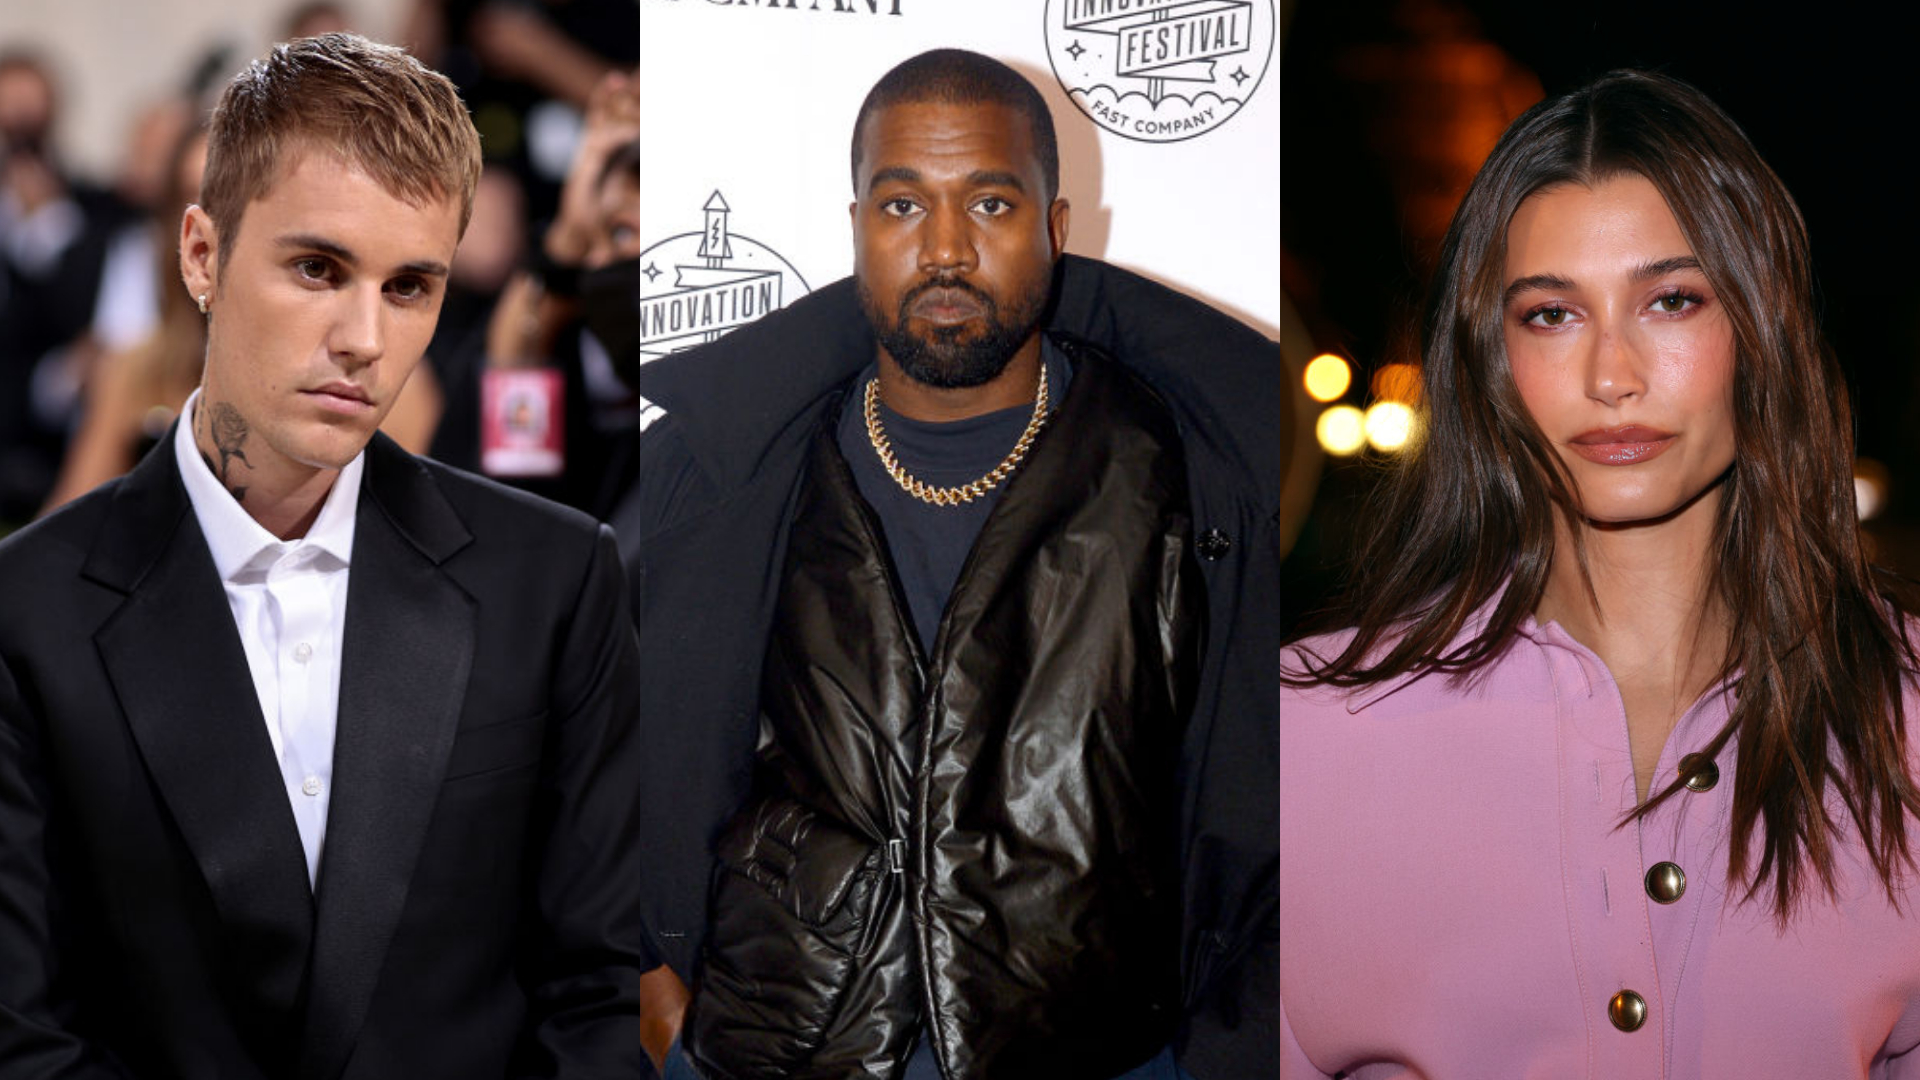 Justin Bieber rompe amizade com Kanye West após rapper atacar Hailey nas redes sociais, diz TMZ: “Longe demais”